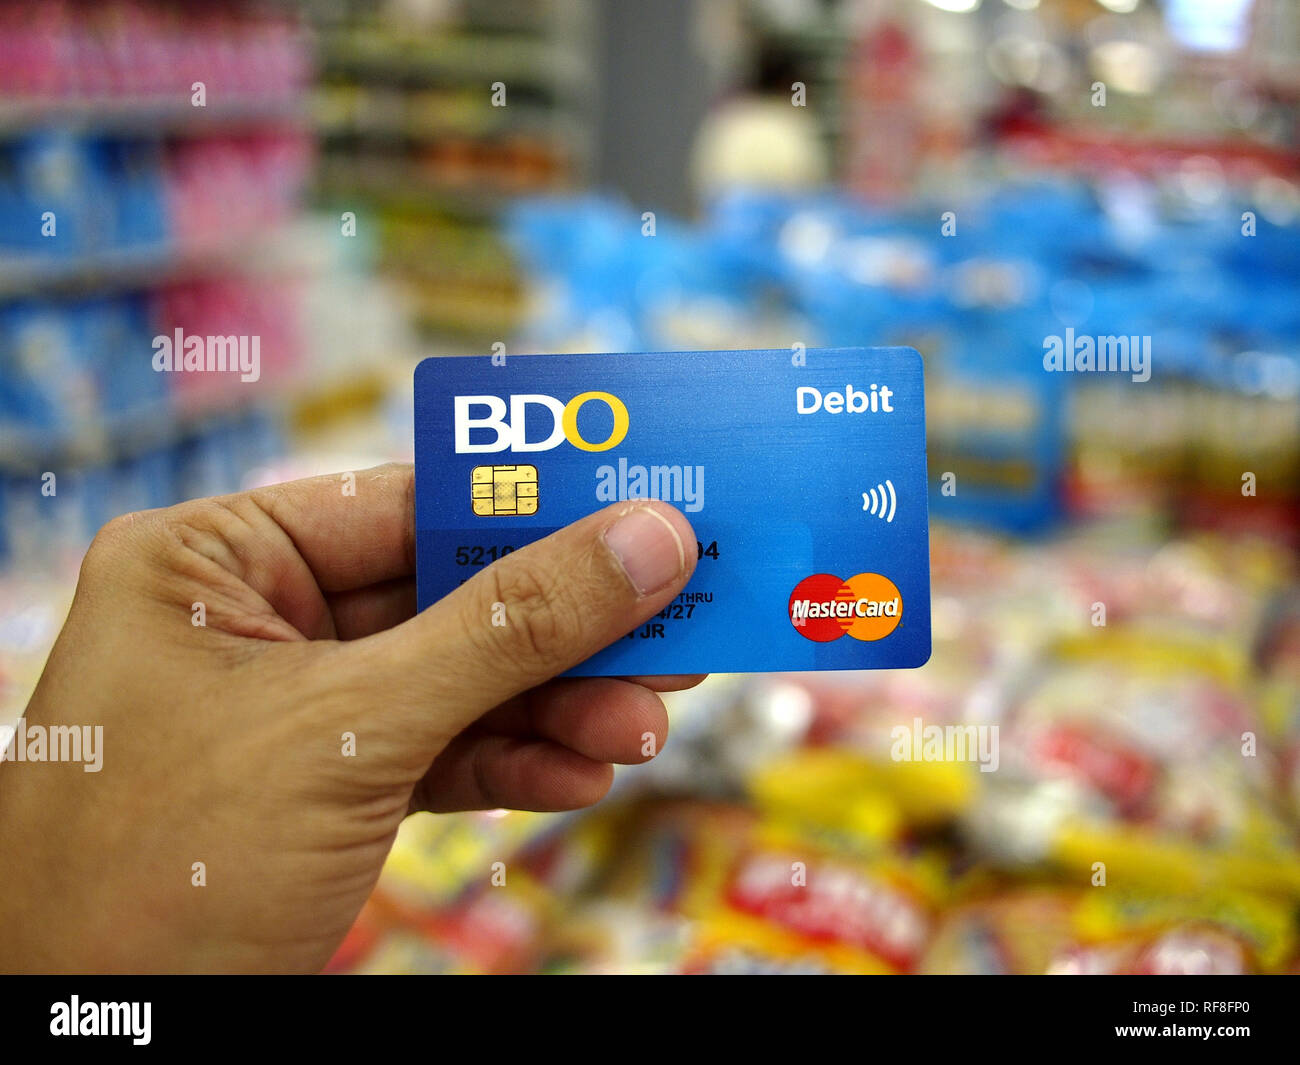 ANTIPOLO City, Filippine - 15 gennaio 2019: la mano di un cliente in possesso di una carta di credito all'interno di un negozio di alimentari. Foto Stock